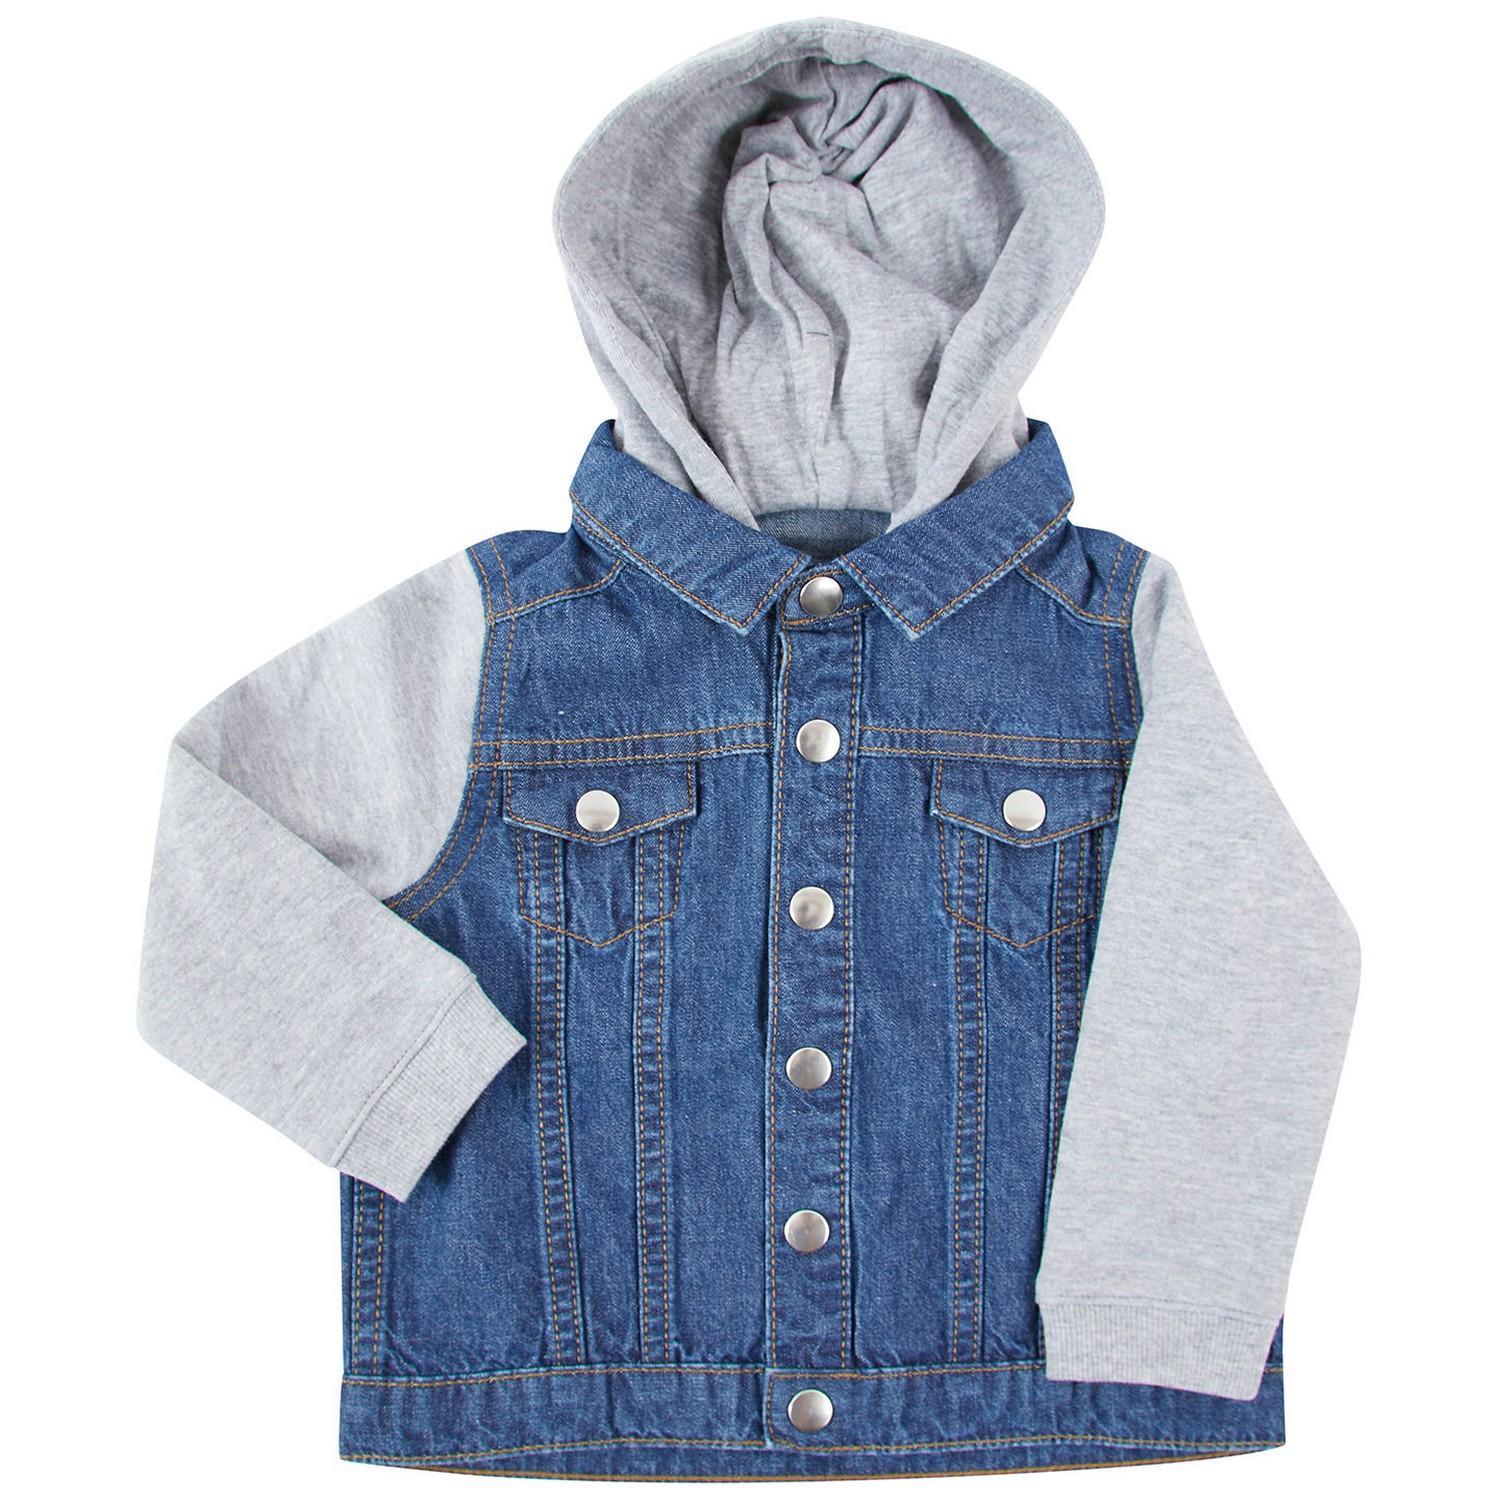 Larkwood Childrens/Kids Denim Jacket (Blue) (24-36 Months)